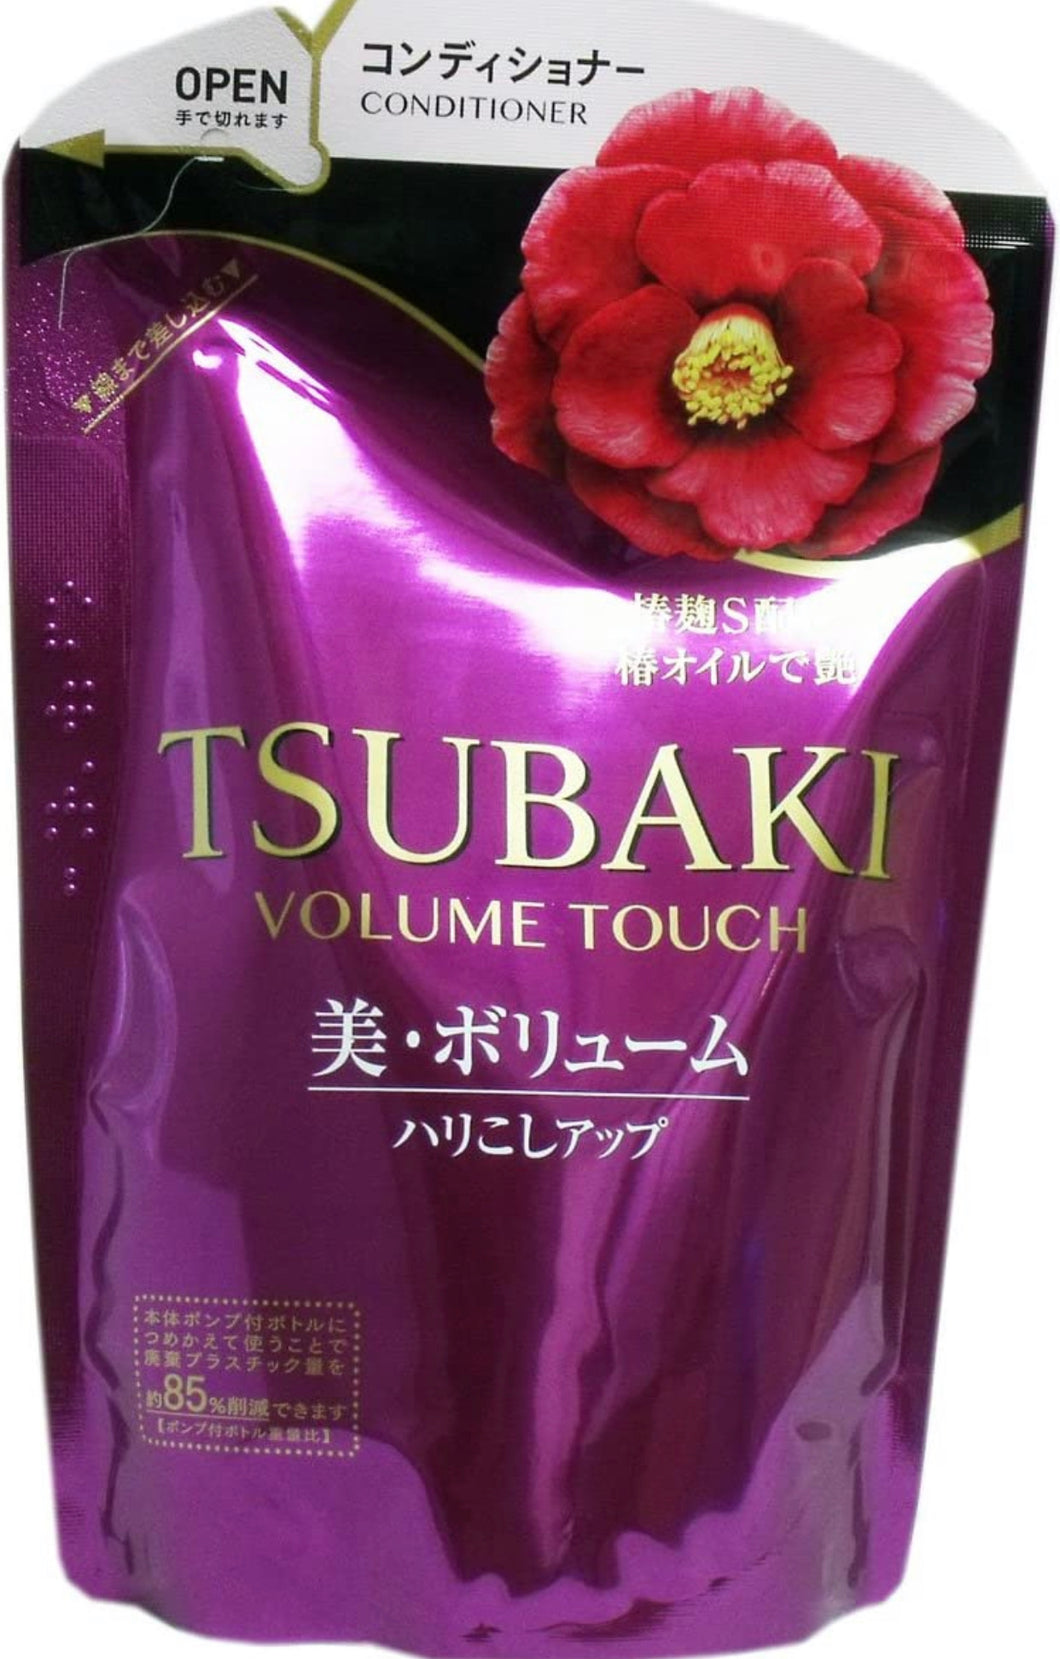 Tsubaki Volume Touch Refill Conditioner 345ml